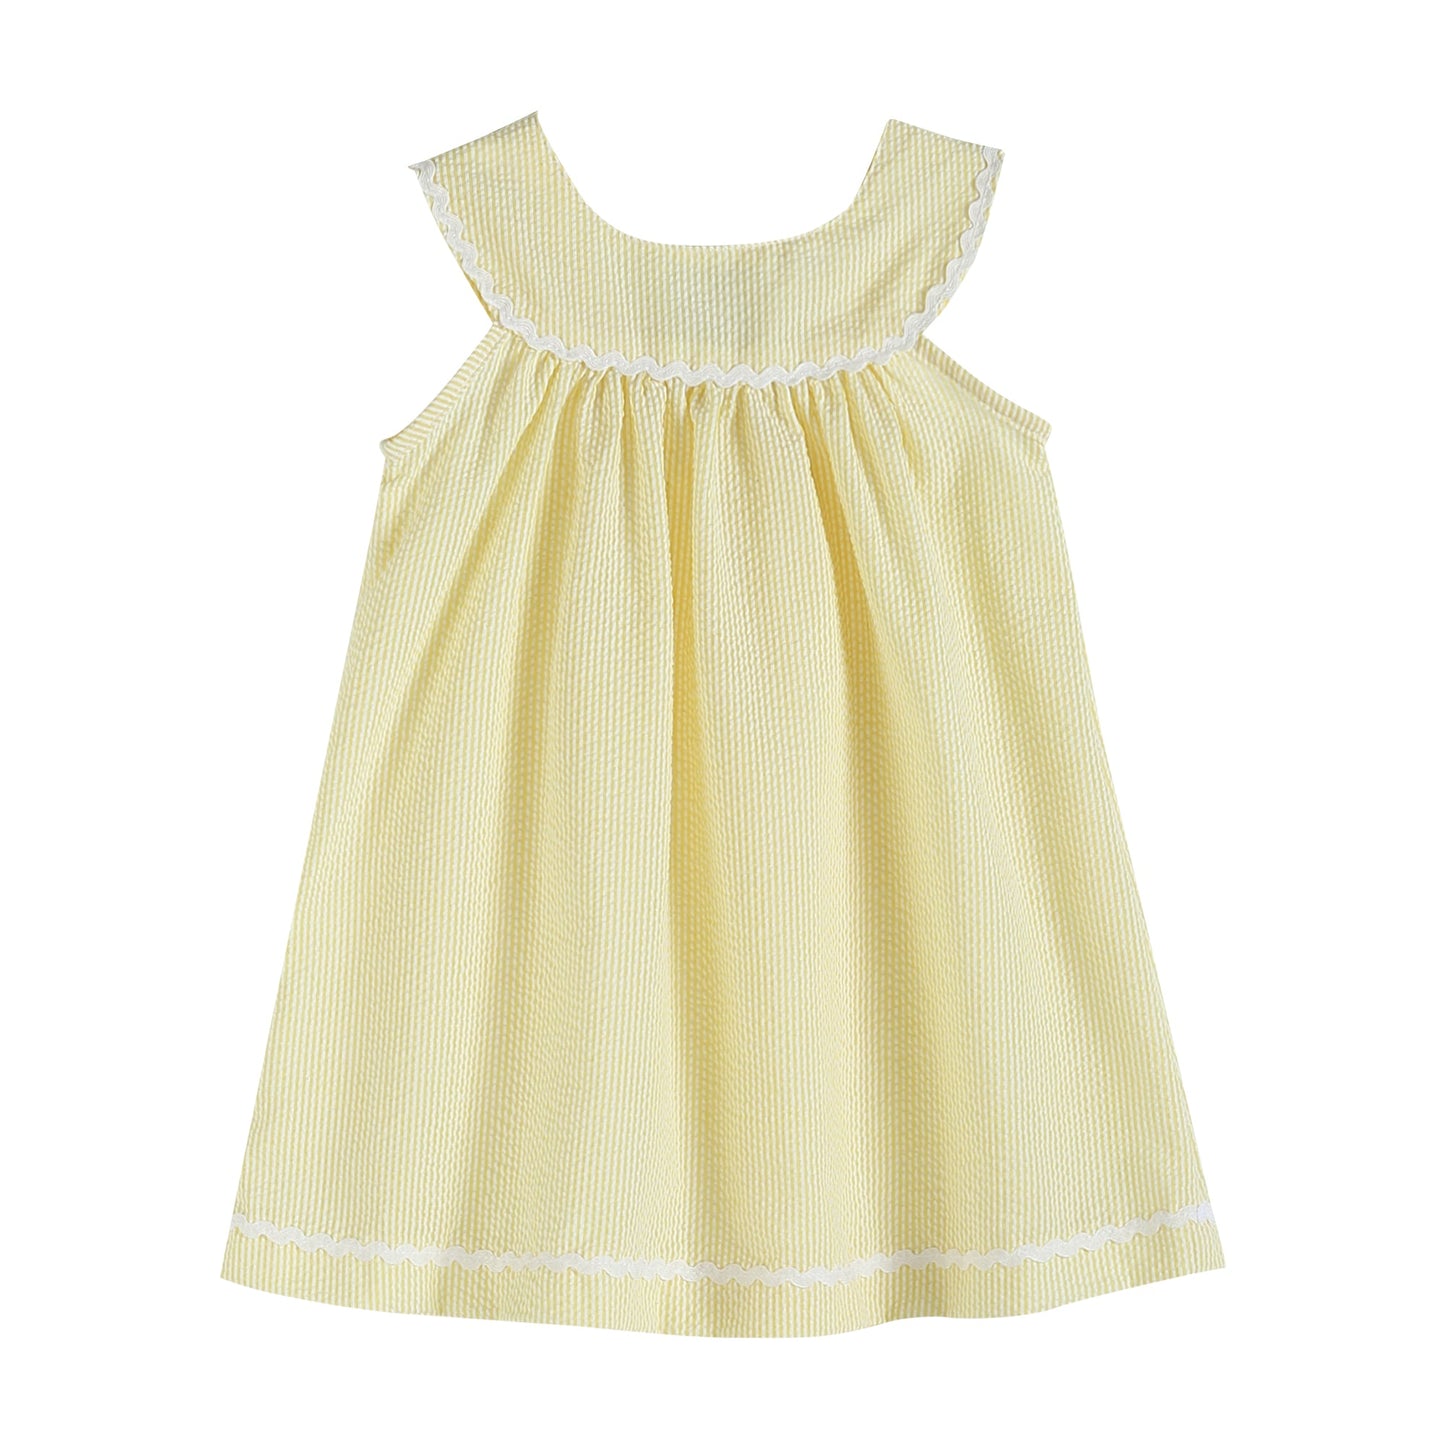 Special Purchase - Pastel Yellow Seersucker Yoke Dress